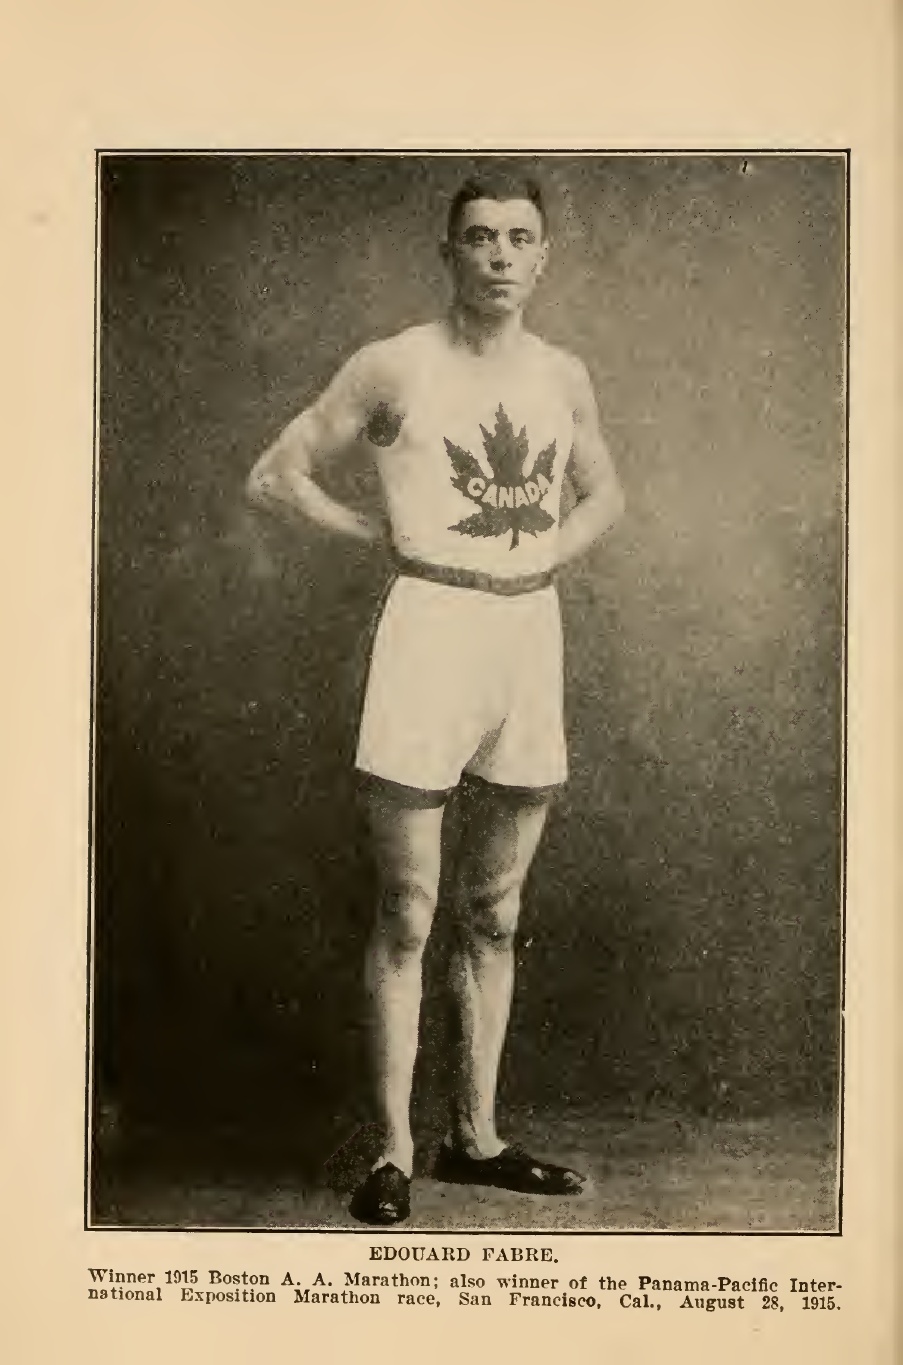 19 avril 1915  Édouard Fabre remporte le marathon de Boston